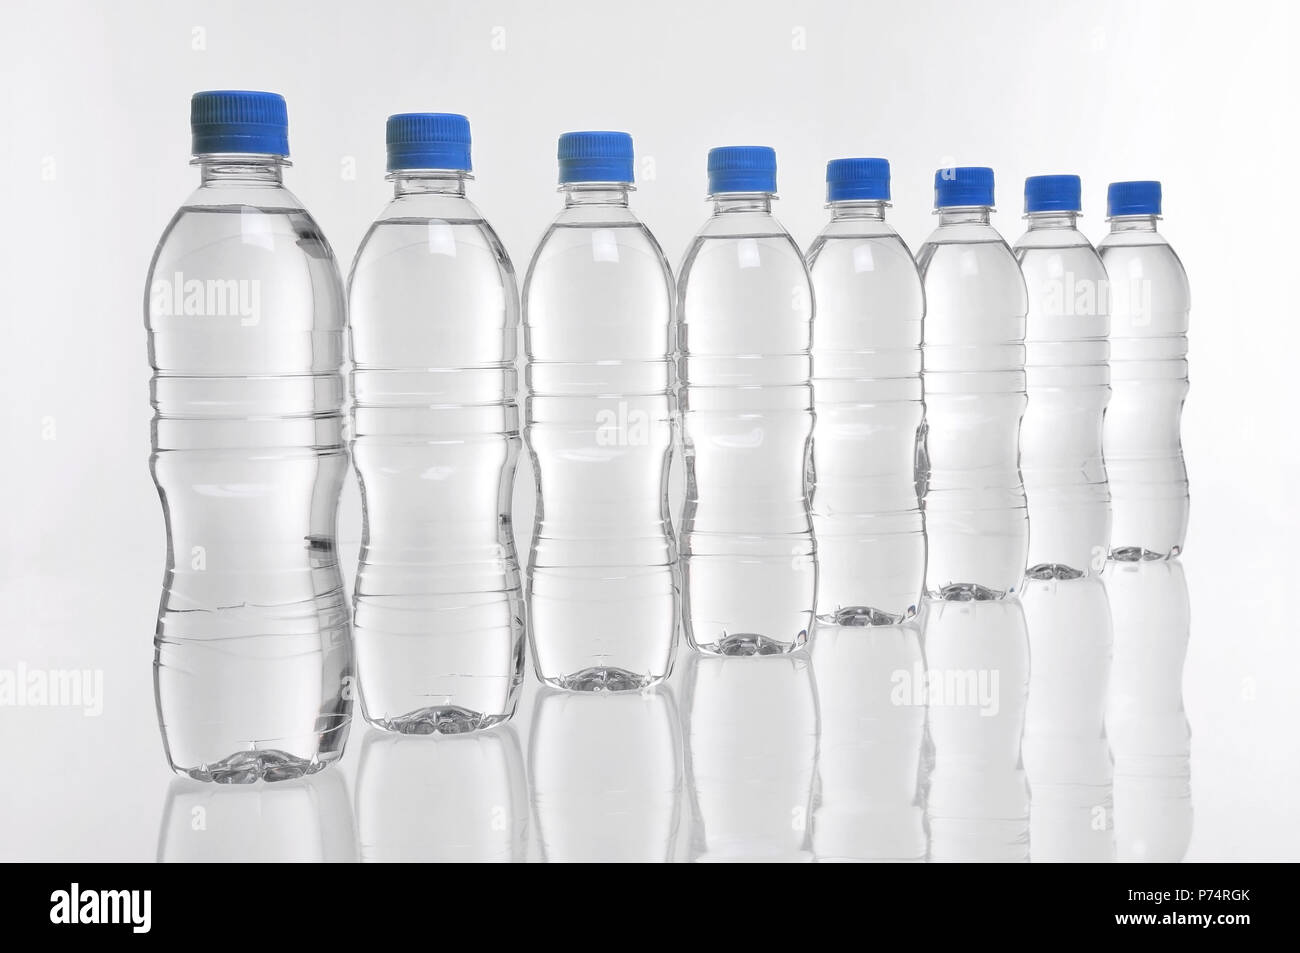 8 bouteilles d'eau en plastique avec couvercles bleu dans une rangée Banque D'Images